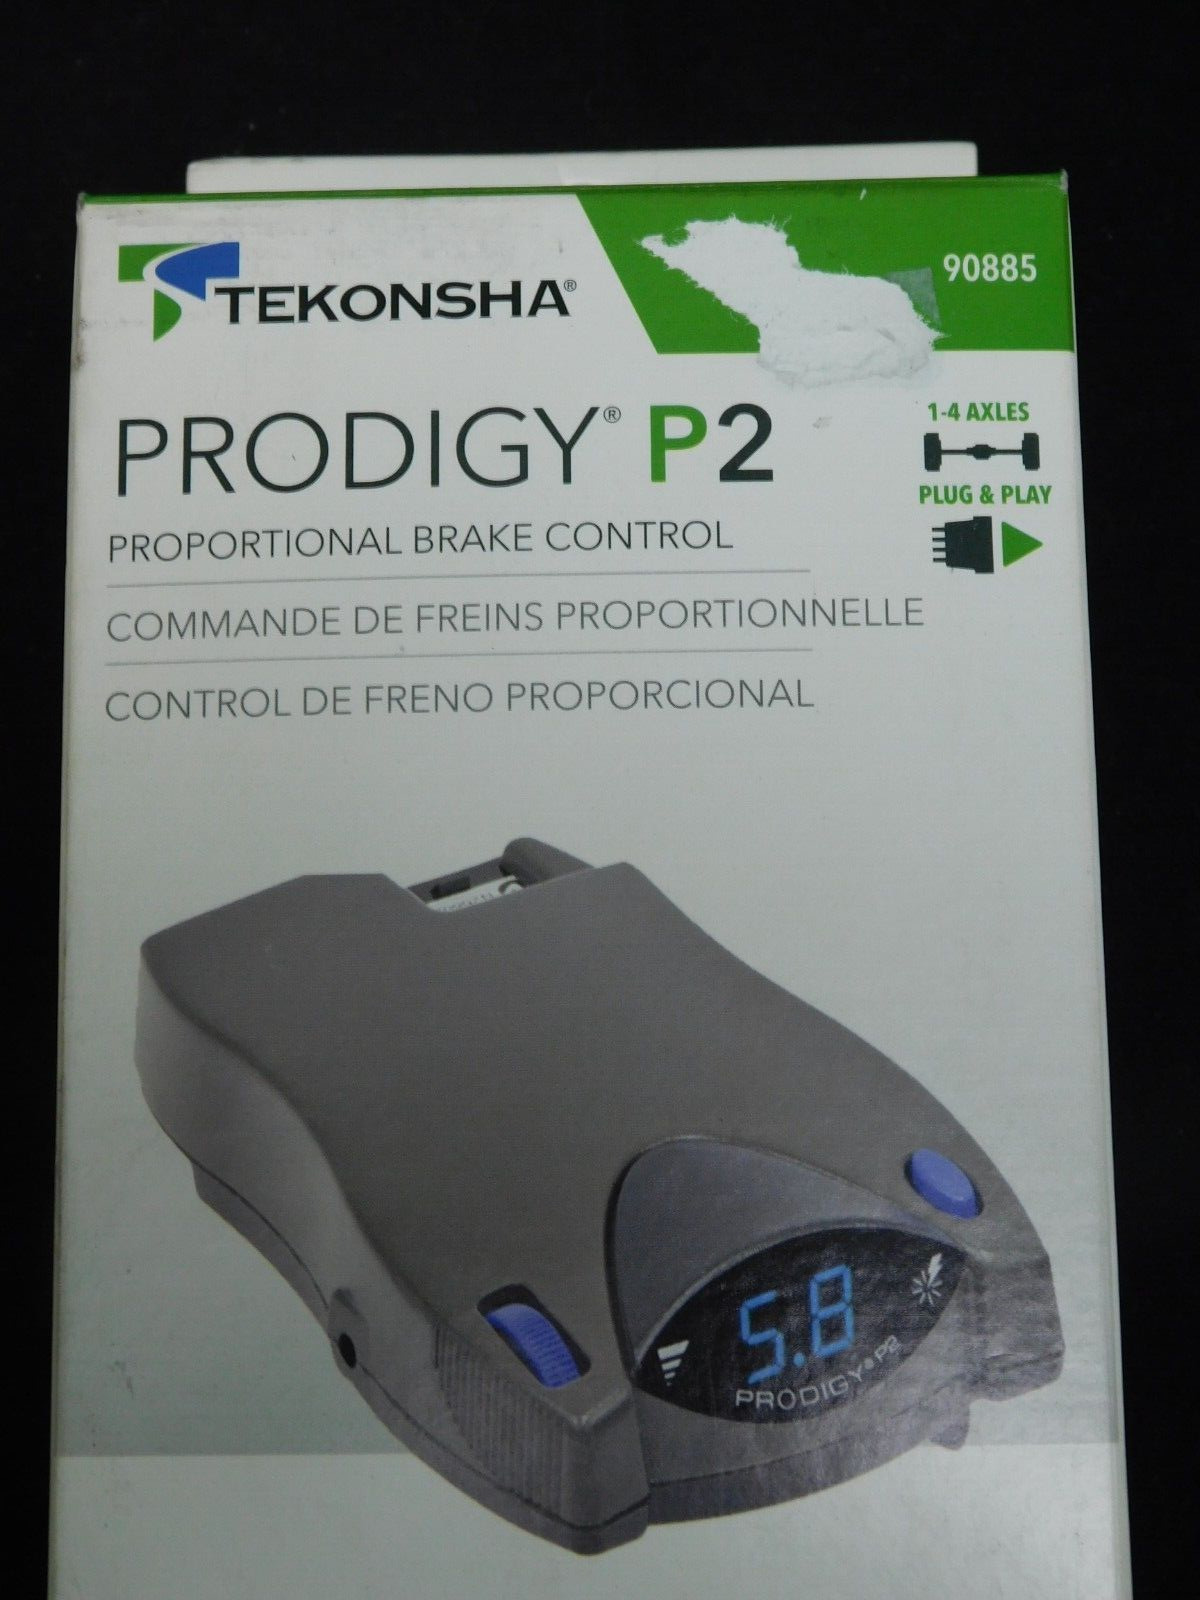 Tekonsha - 90885 - Prodigy P2 - Proportional Brake Control - 